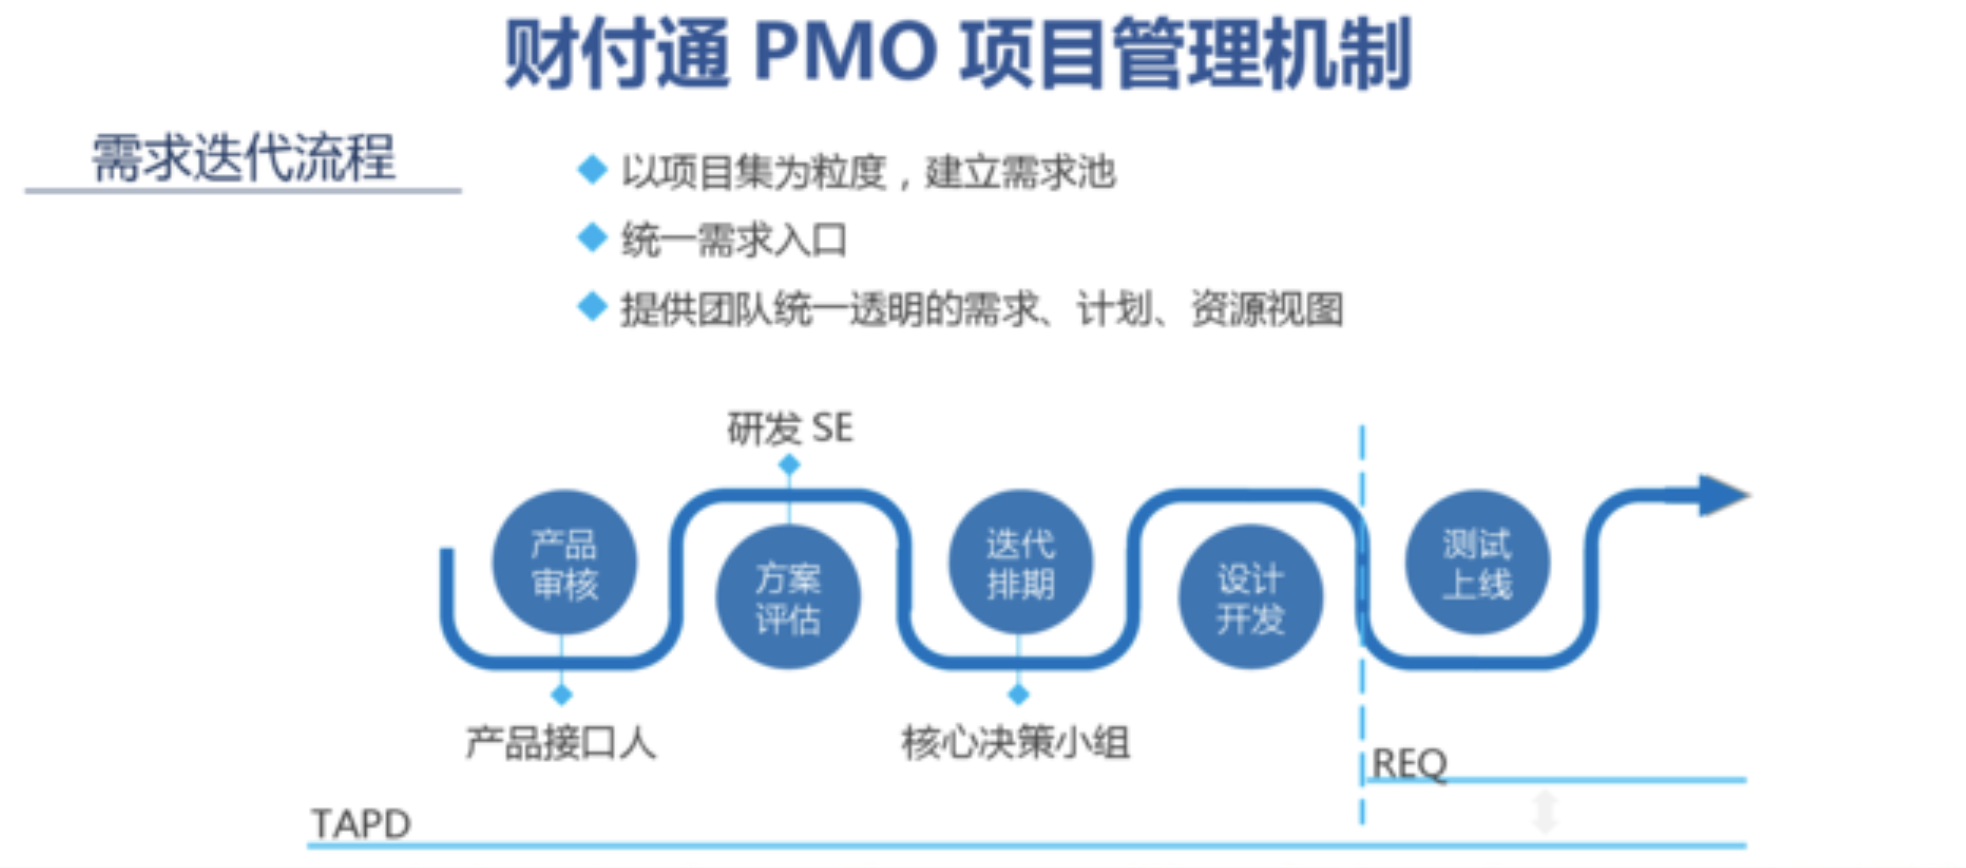 MPD：财付通——标准化项目管理与敏捷迭代的兼得——互联网PMO与项目管理实践  项目管理 管理 产品经理 产品 第3张